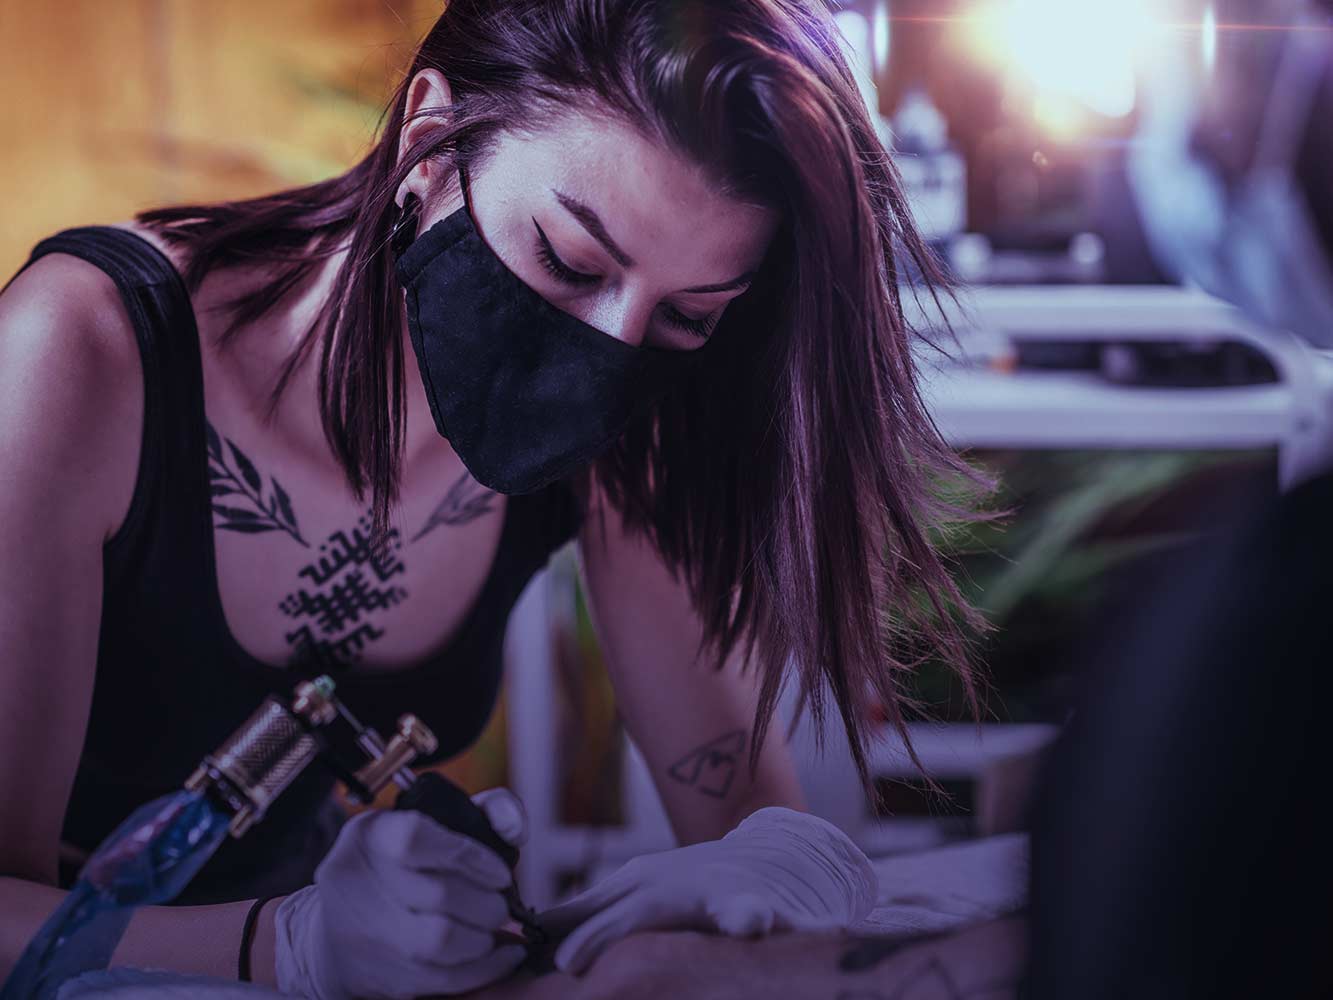 Forschung zu Tattoofarben: Probanden für Tattoo-Studie gesucht